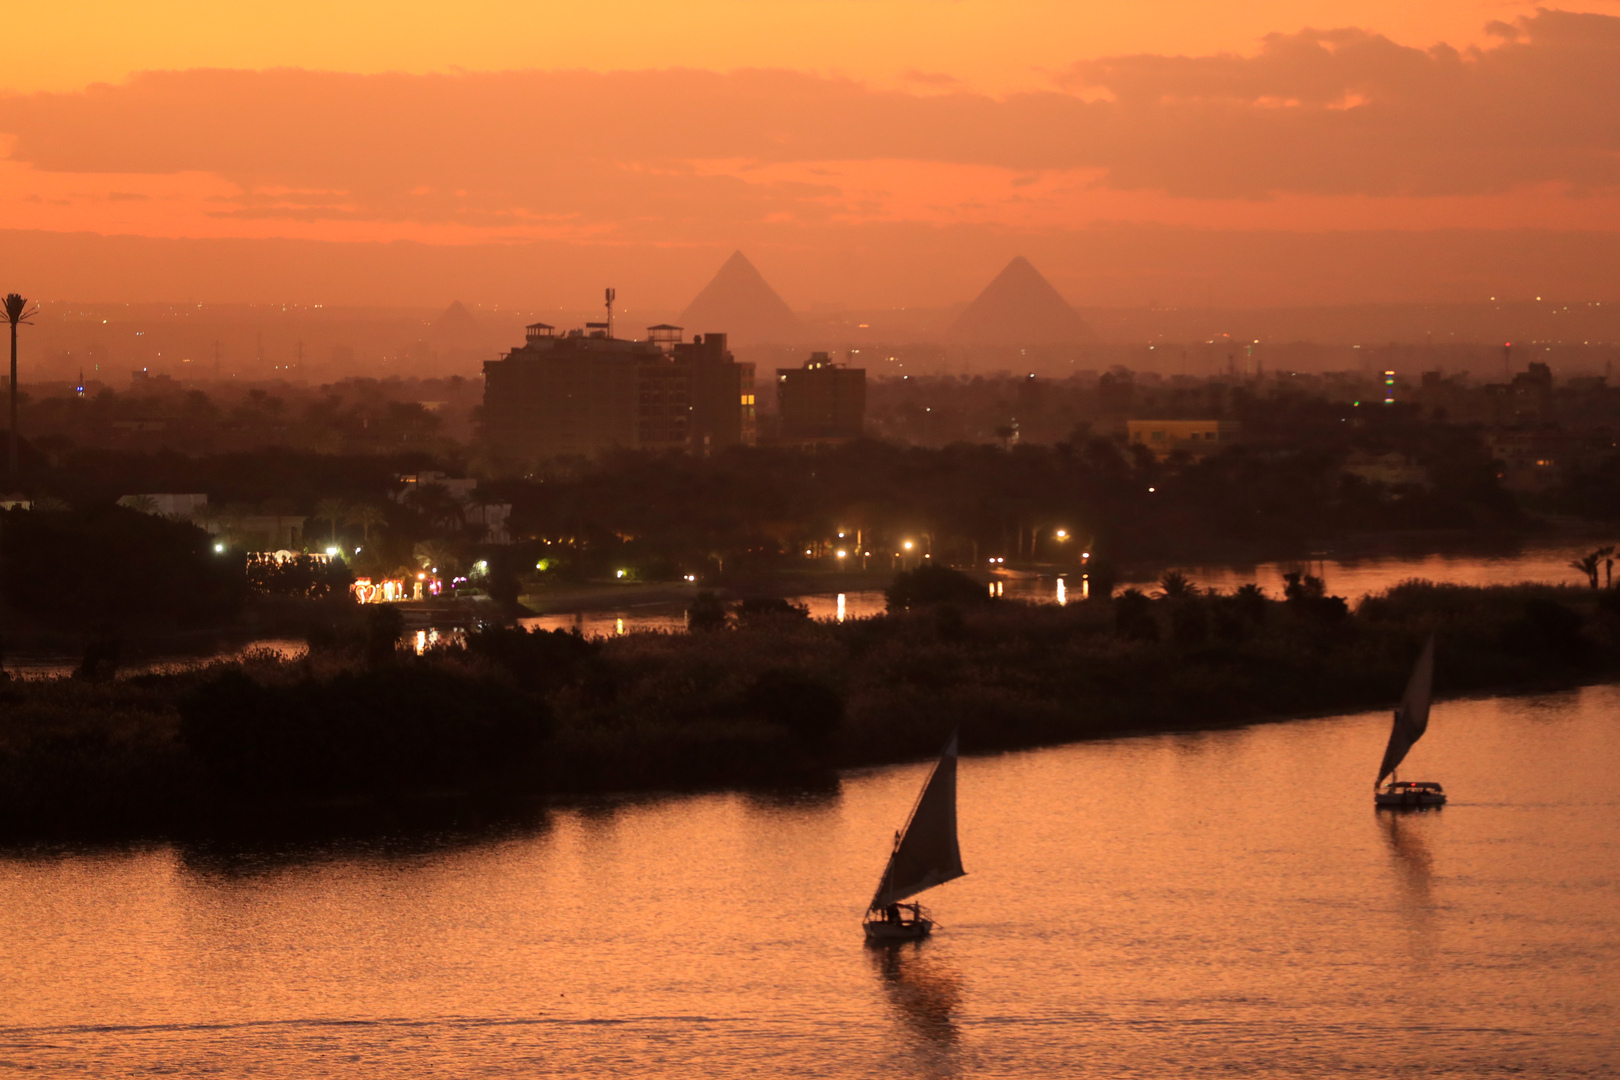 مصر.. مصرع 8 أشخاص في حادث غرق مركب النيل والأمن يكشف تفاصيل جديدة (صور)